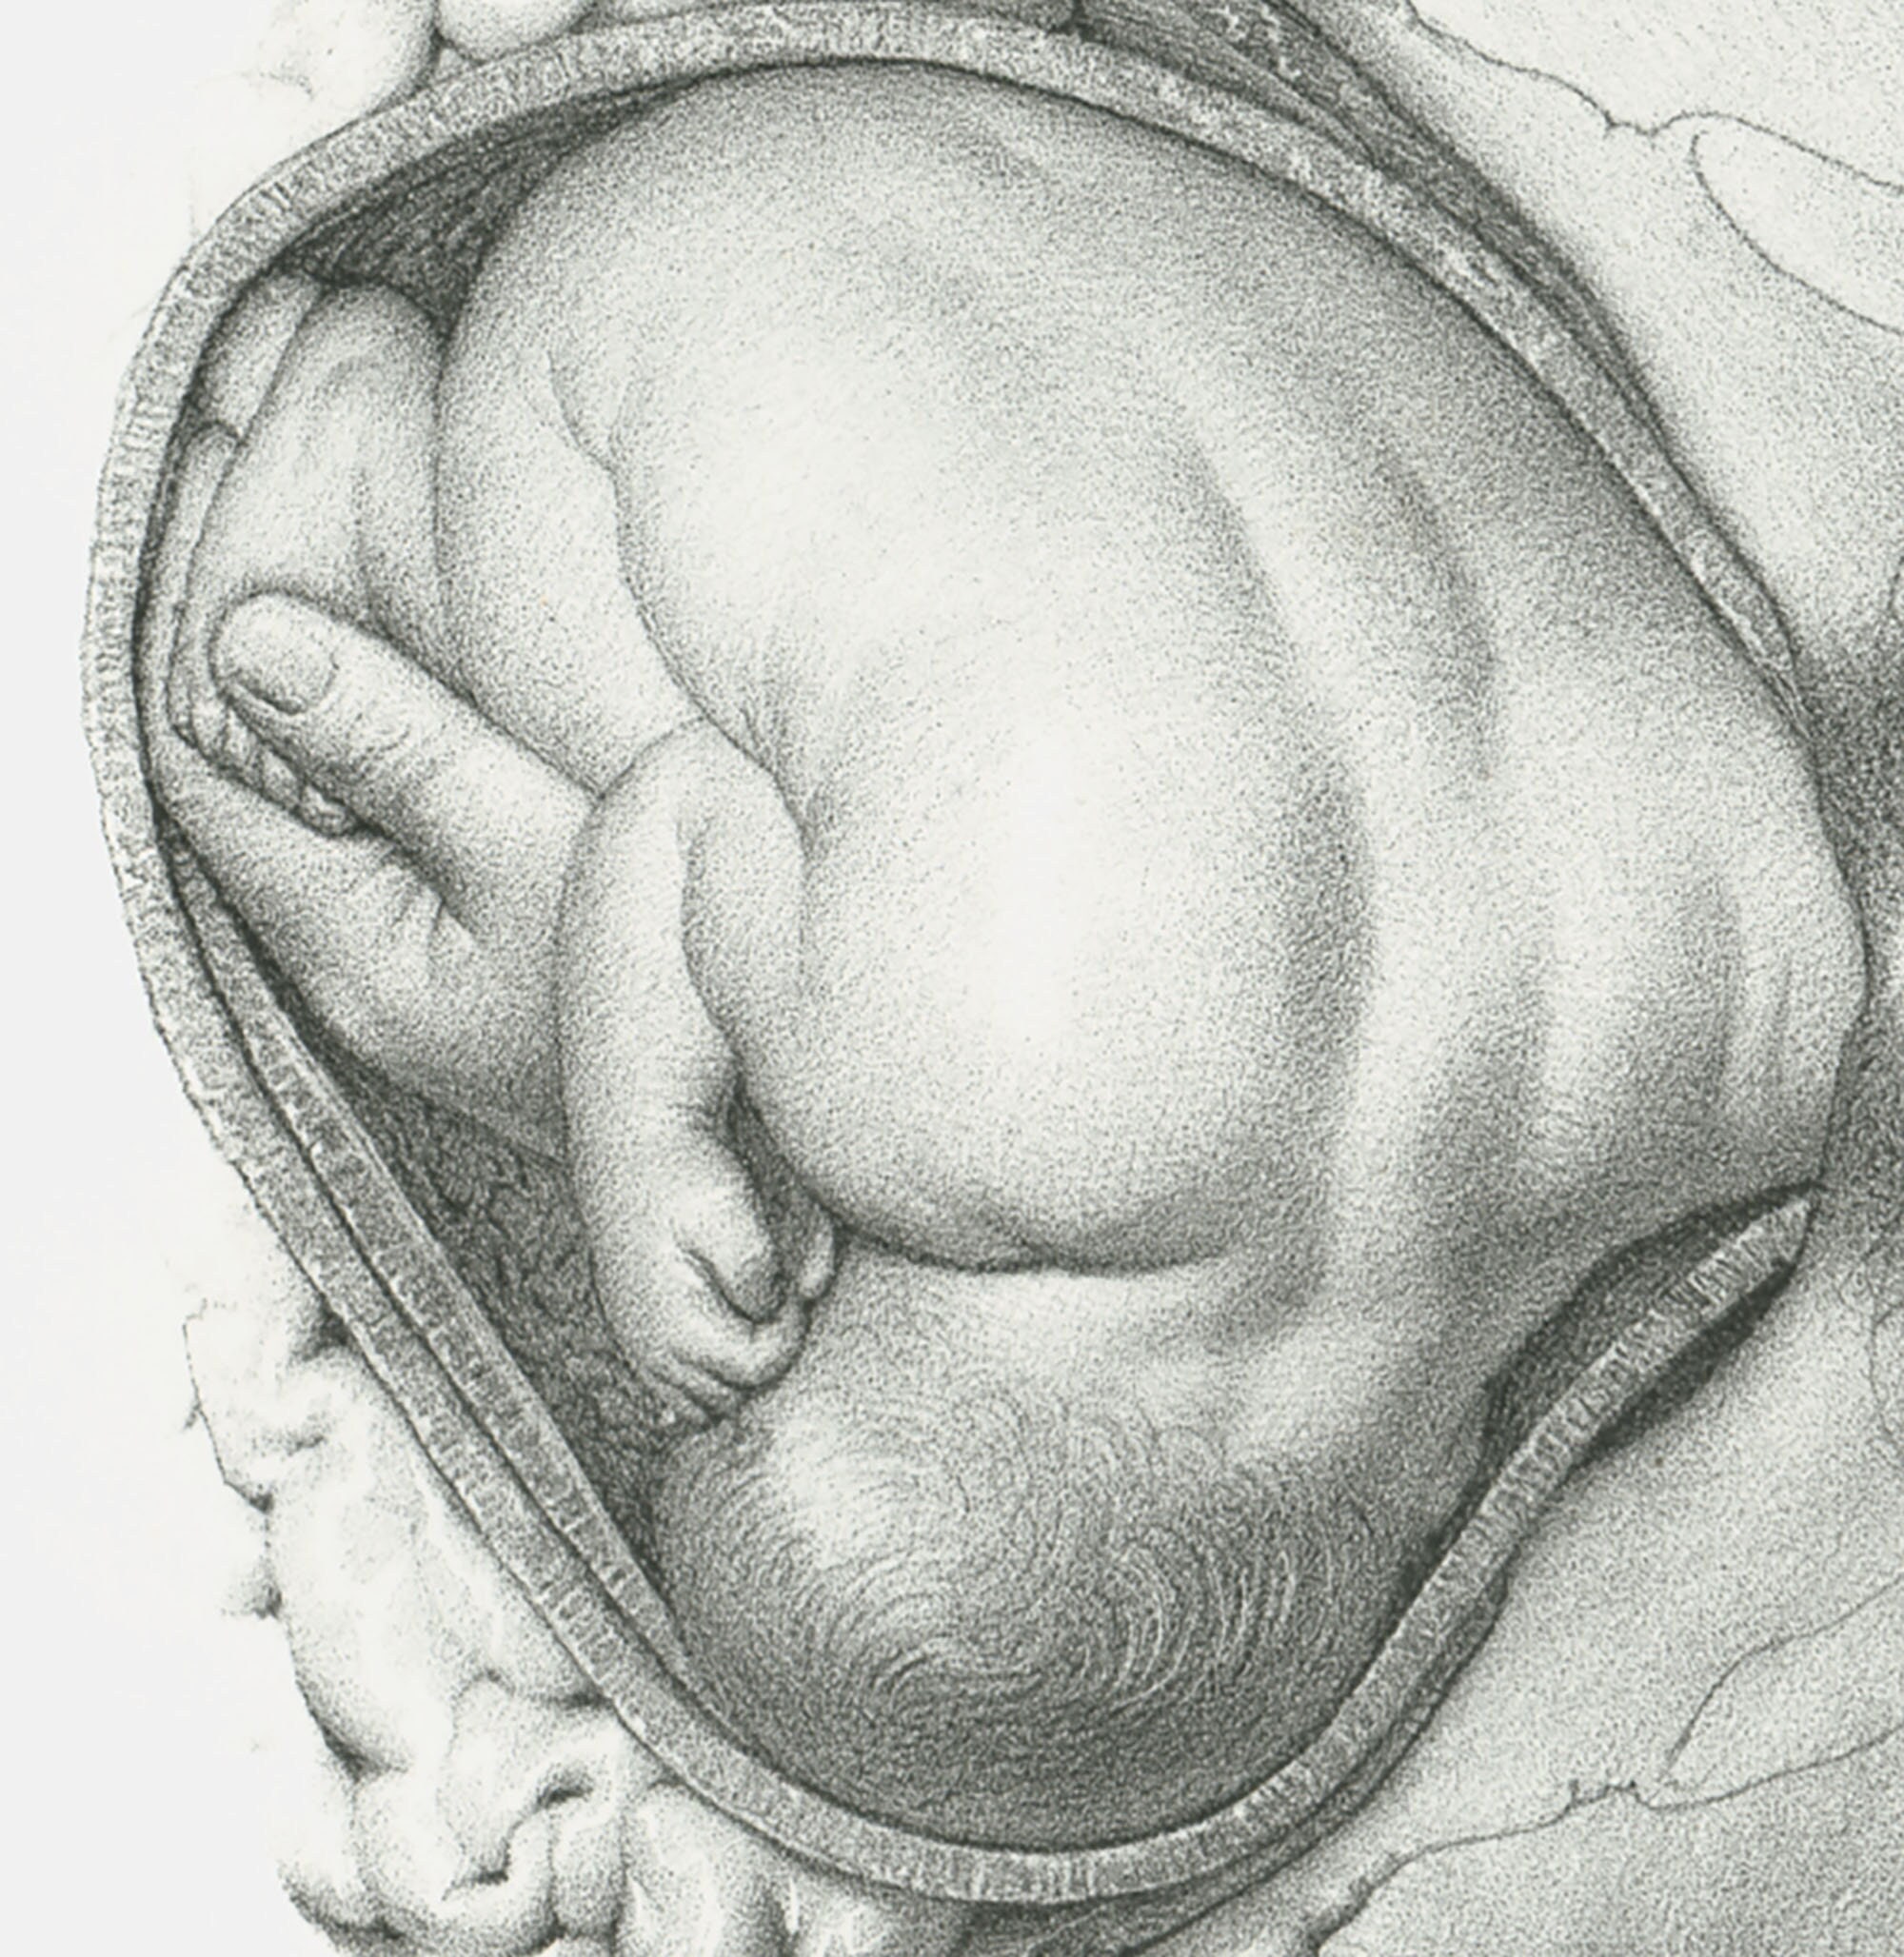 Modèles anatomiques pour démonstration à l'accouchement - Cledical